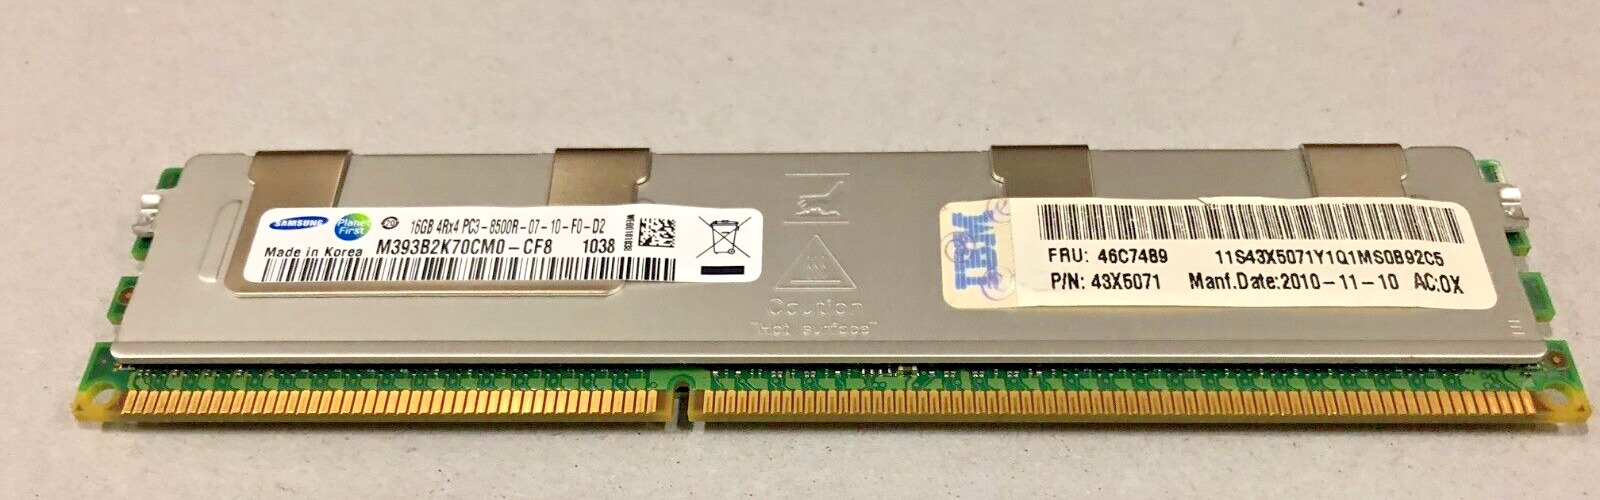 IBM 46C7483 16GB 4RX4 PC3-8500R 46C7489 MEMORY SERVER- MP